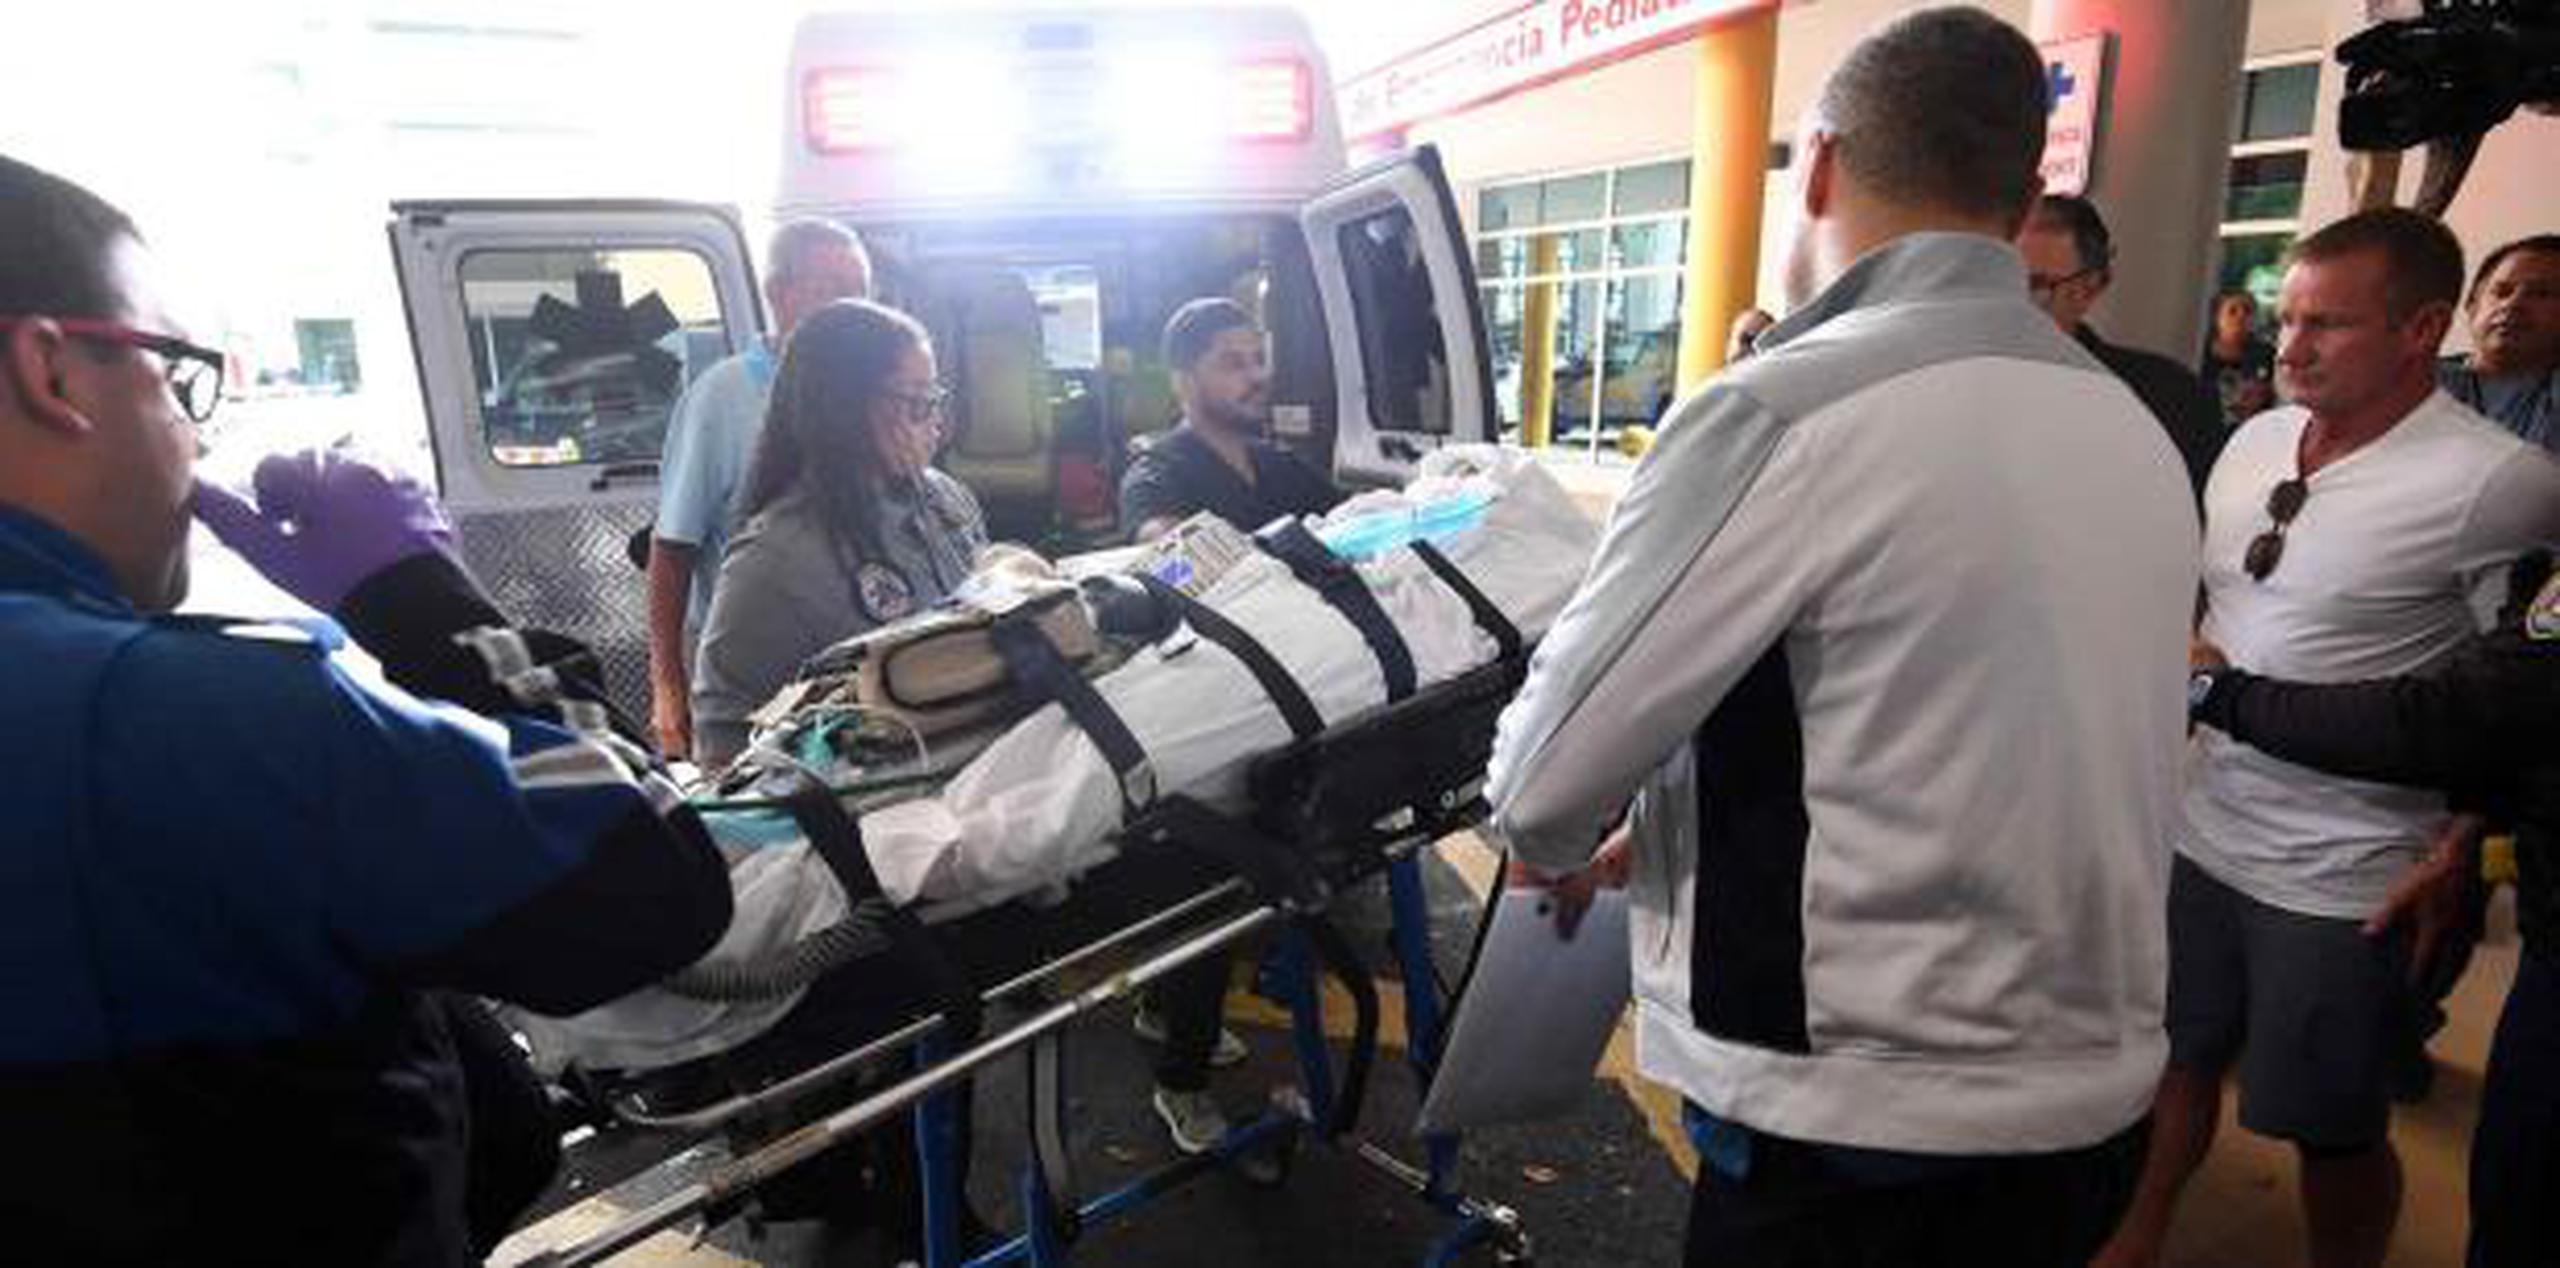 Sean Whelan, con camisa blanca a mano derecha, llegó en la ambulancia con la niña. (andre.kang@gfrmedia.com)